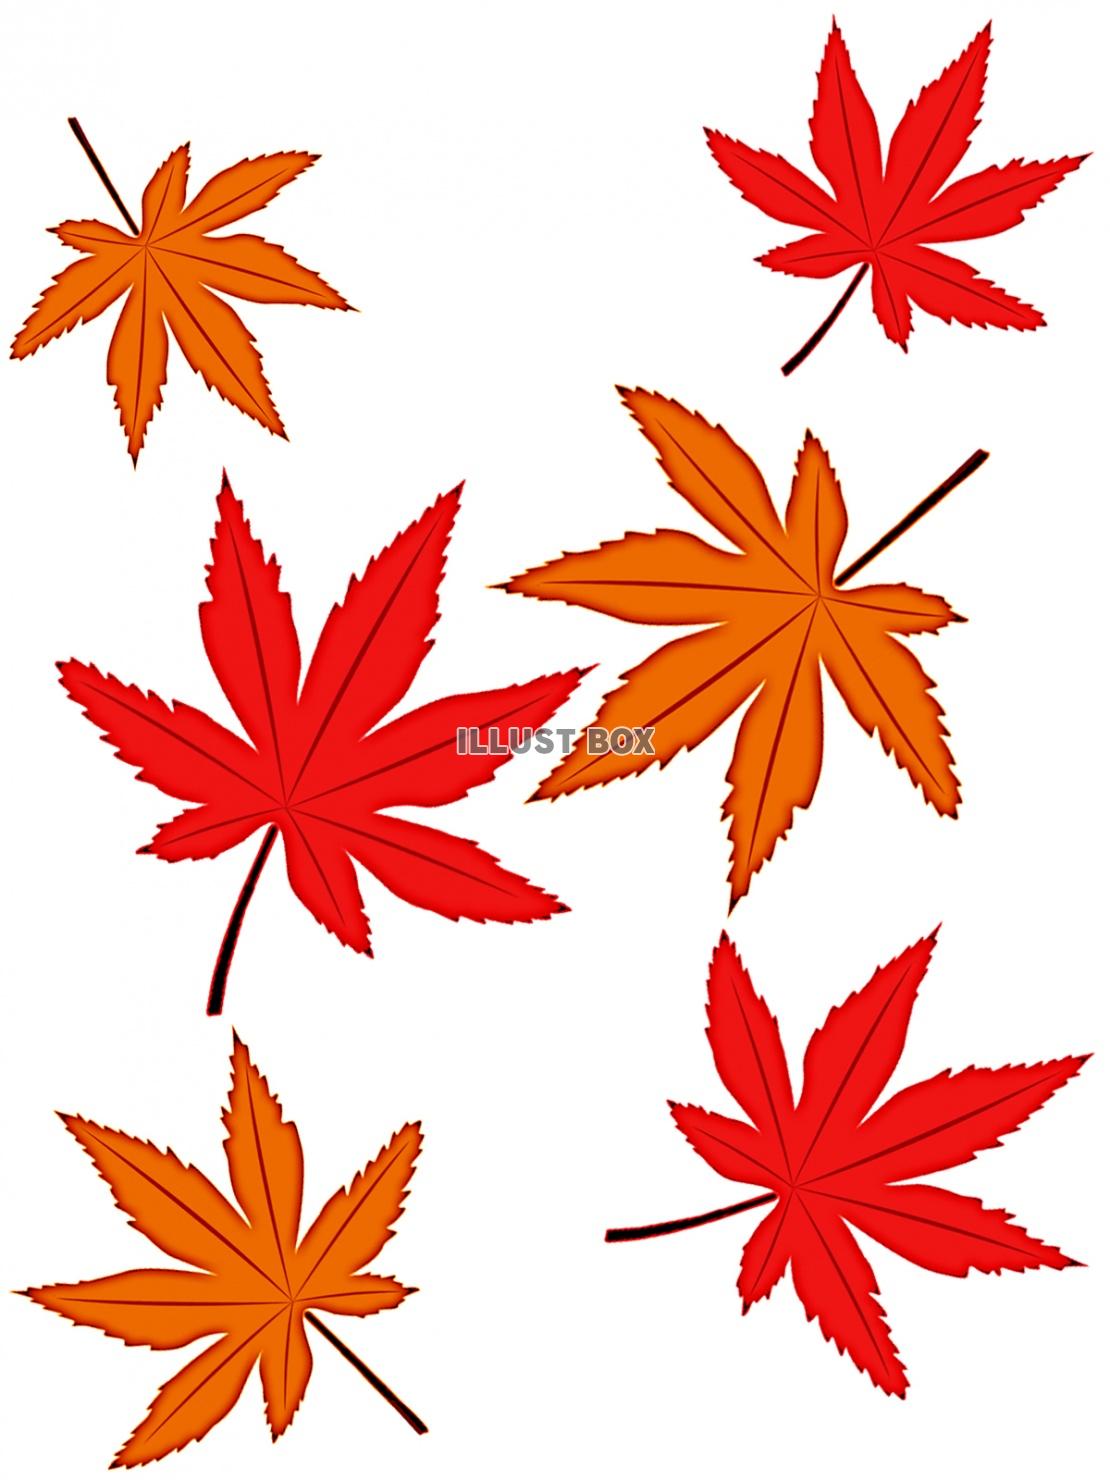 モミジの葉っぱ壁紙シンプル背景素材イラスト